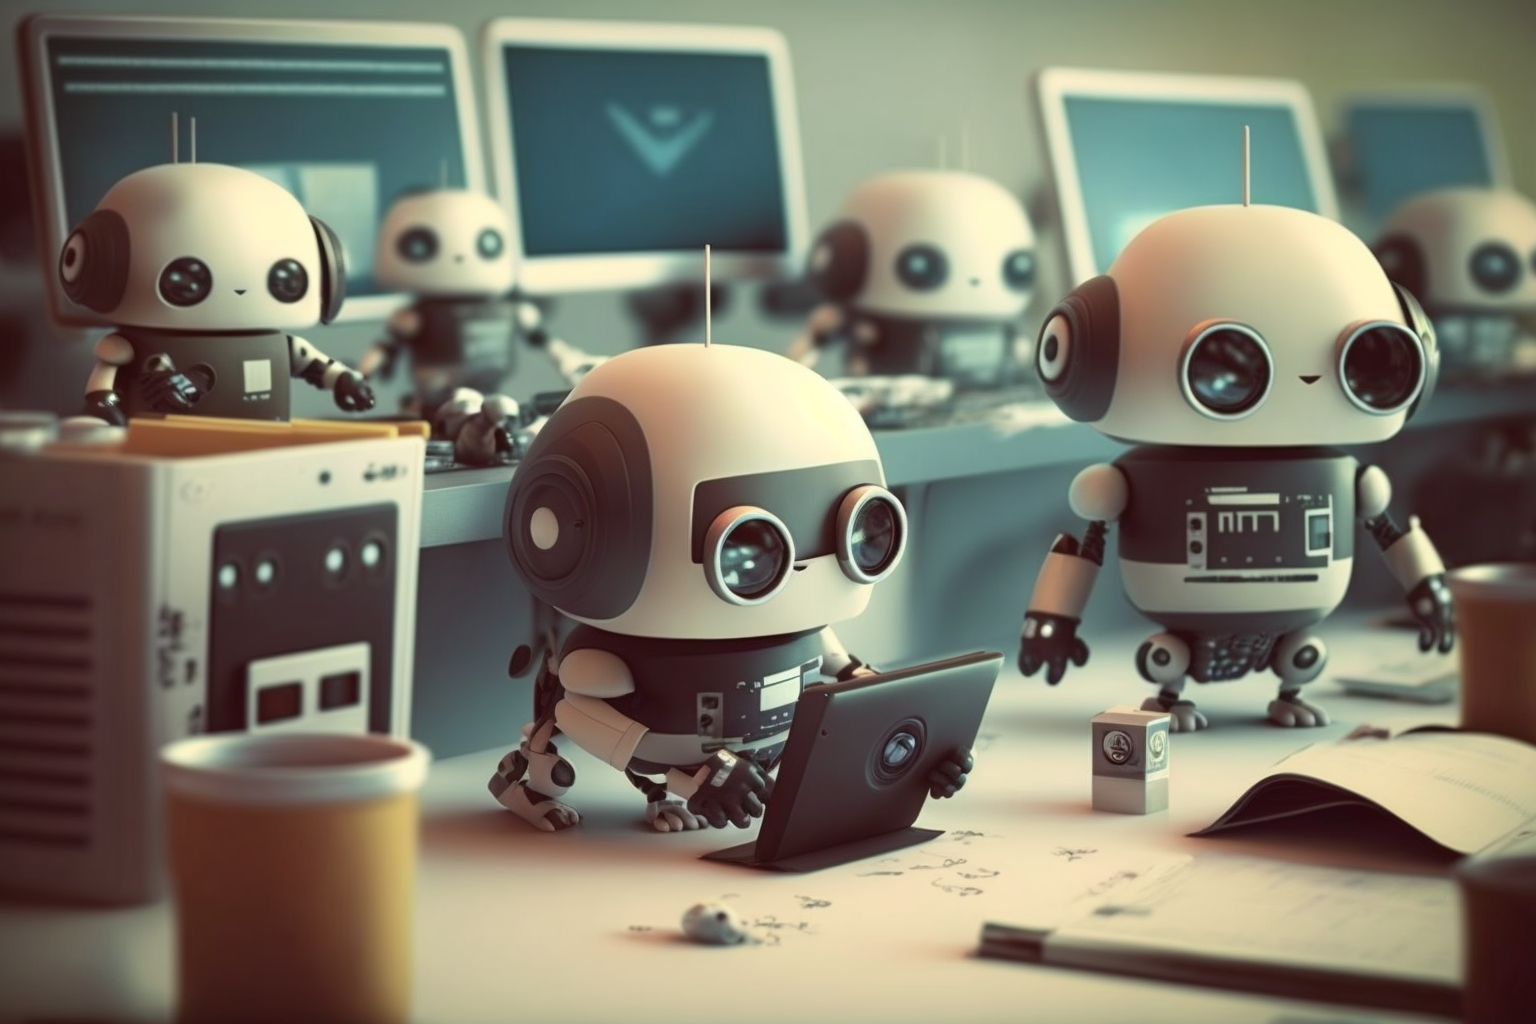 귀여운 로봇들이 열심히 일하는 사진